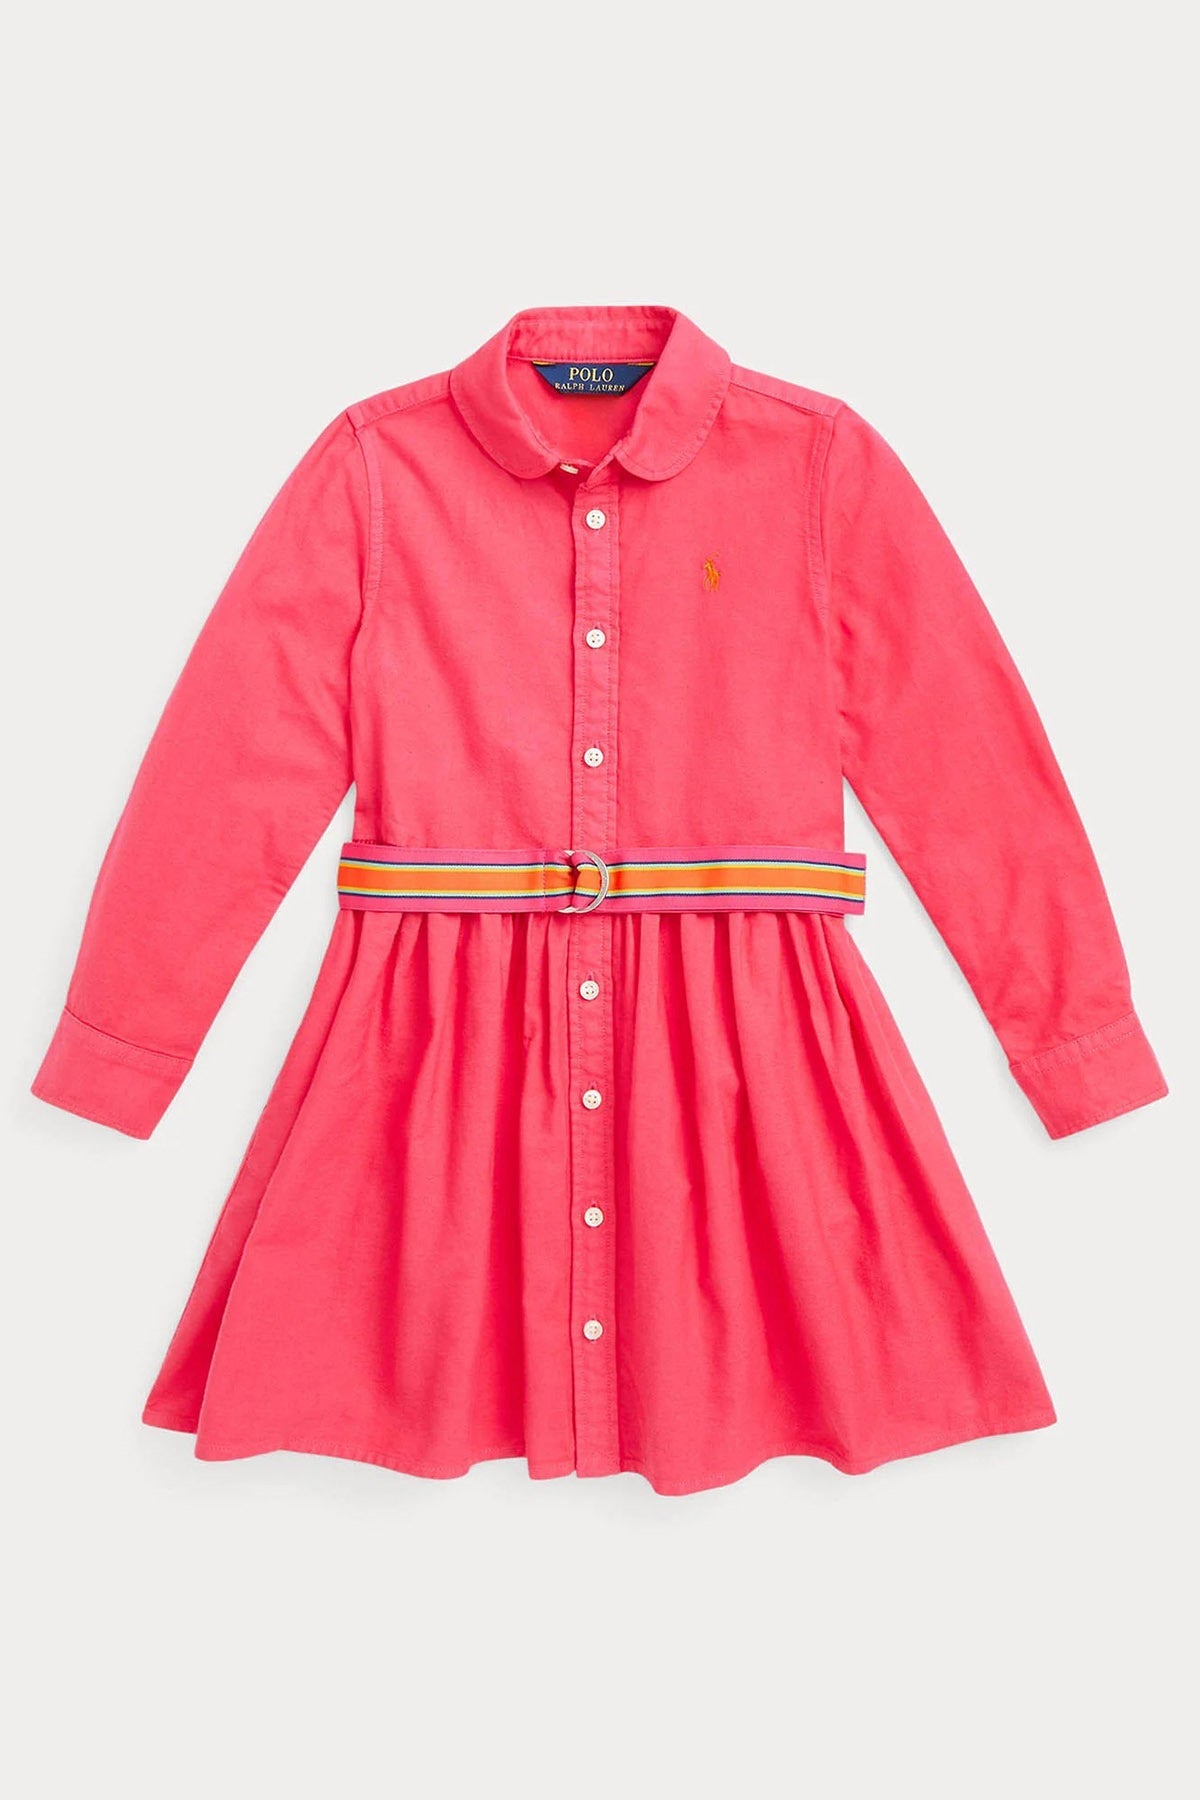 Polo Ralph Lauren Kids 5-6 Yaş Kız Çocuk Gömlek Elbise